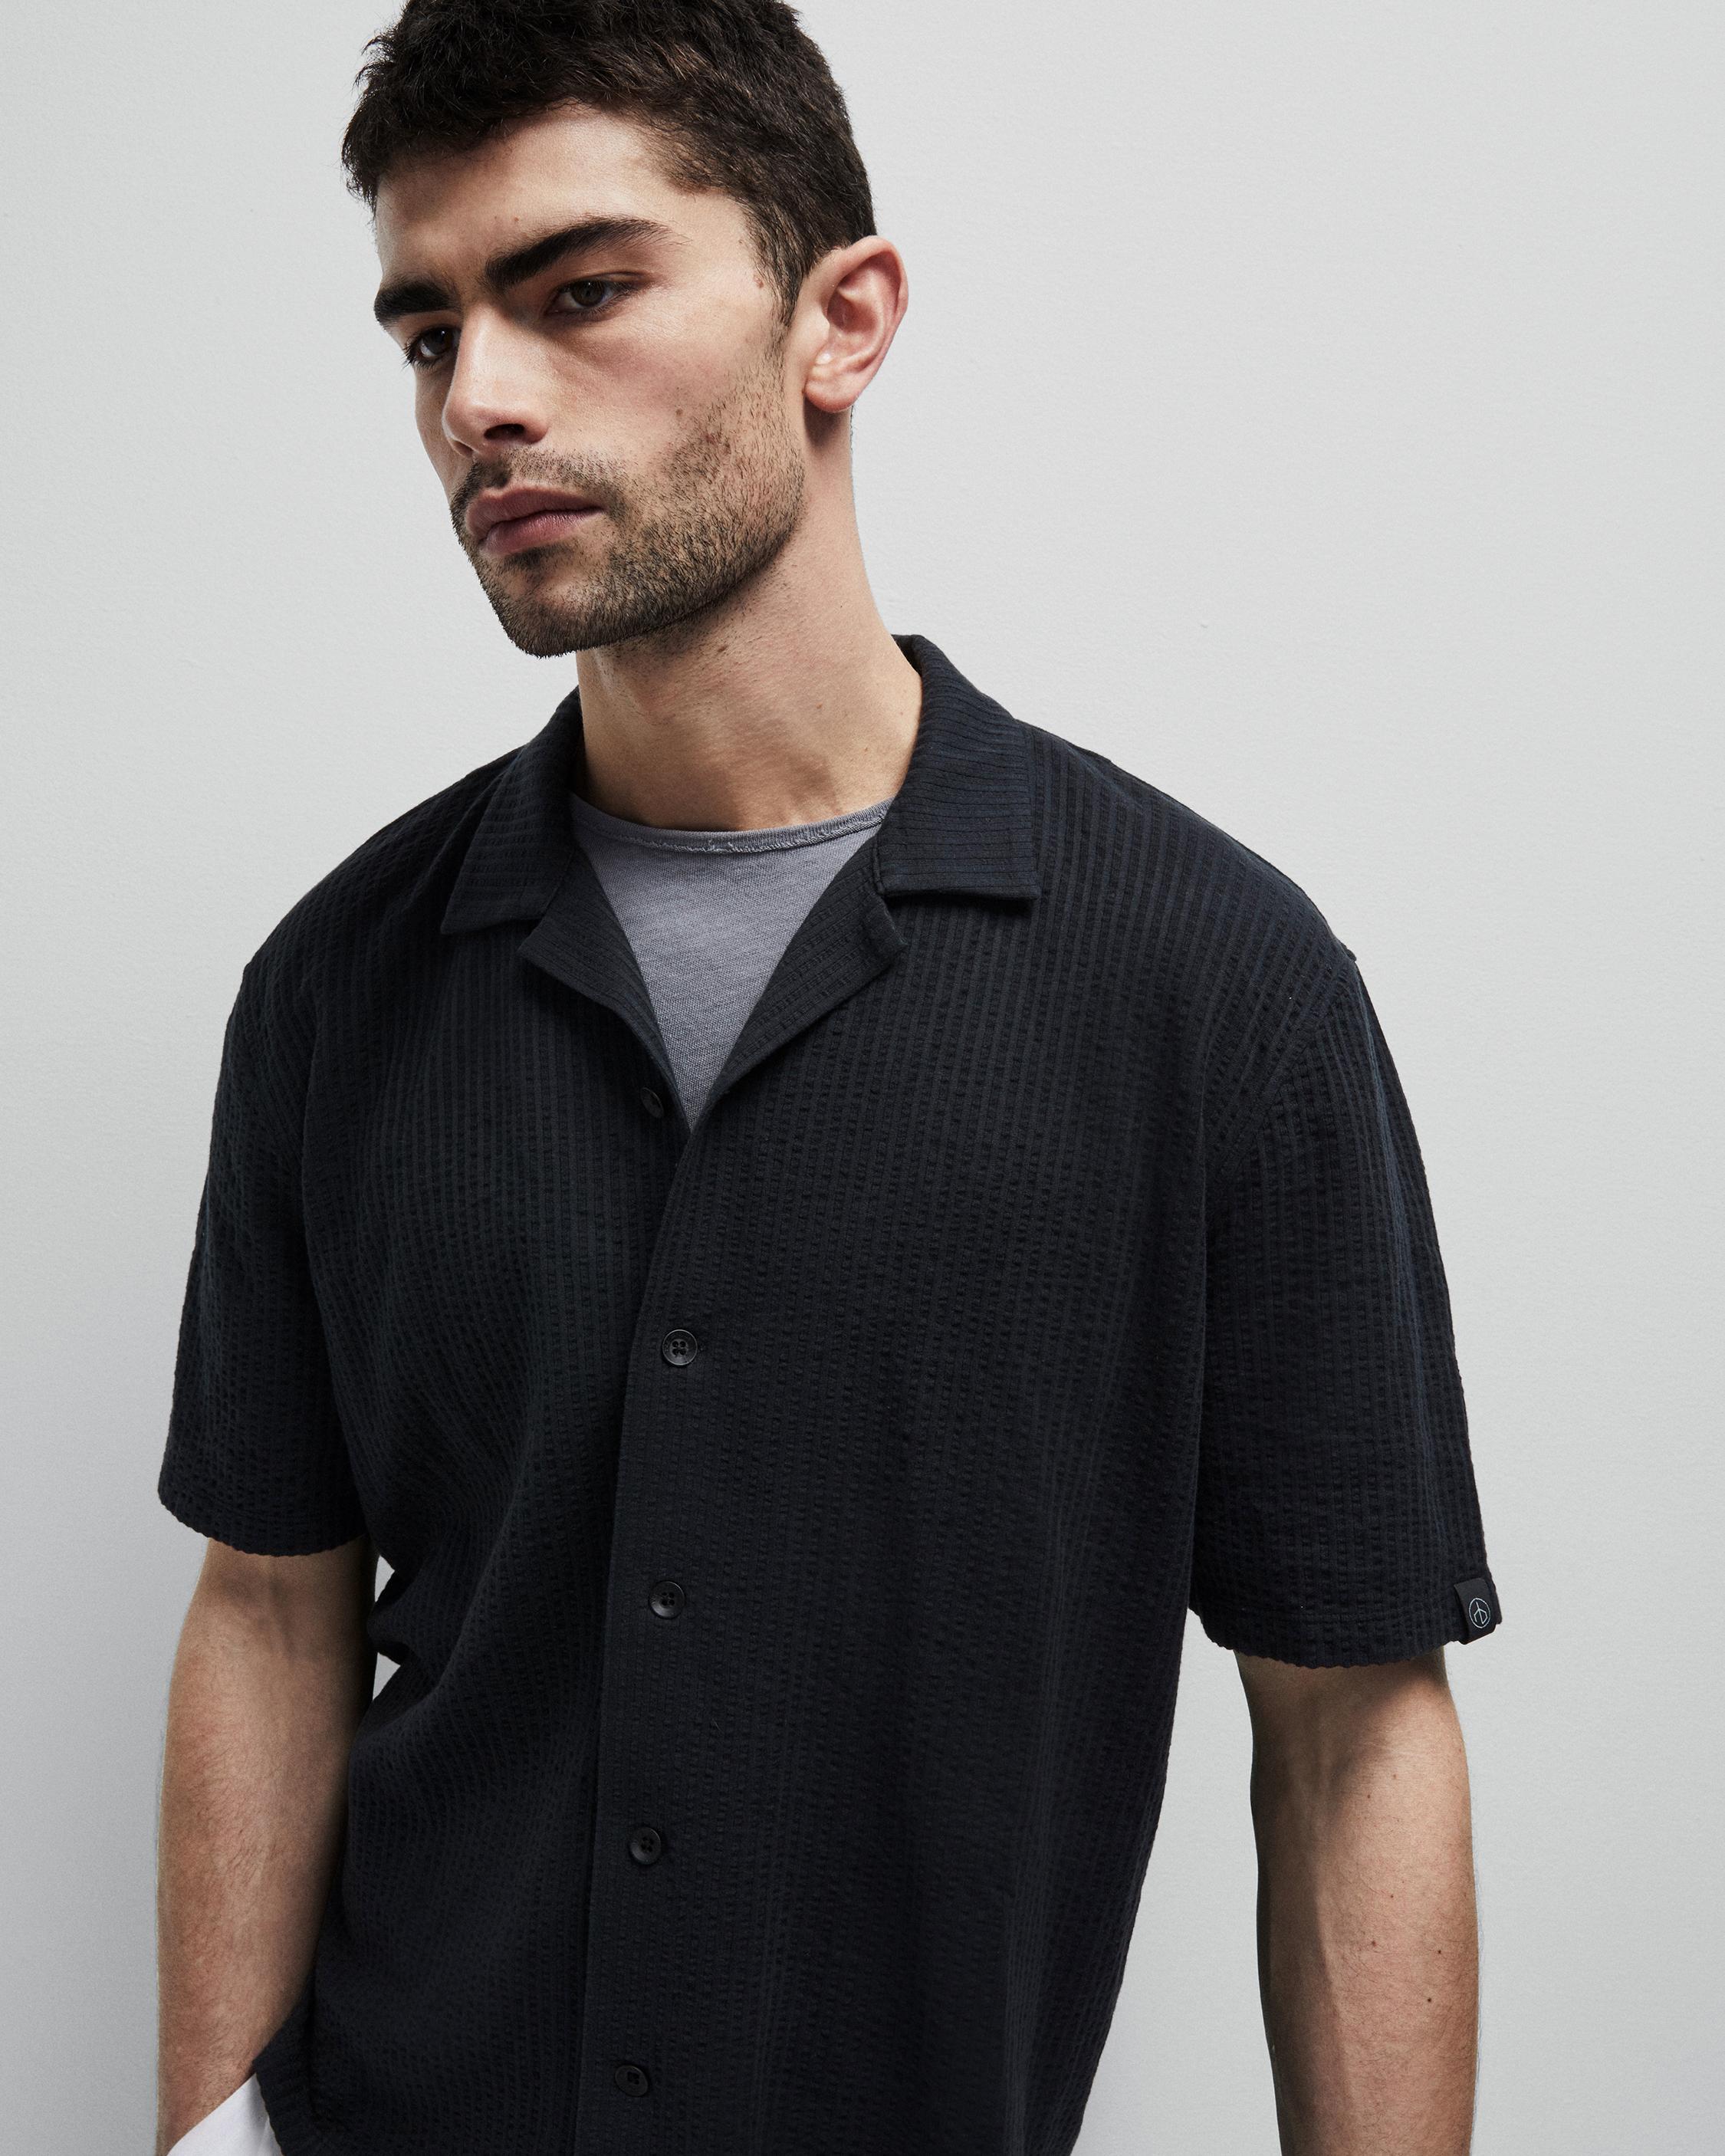 Shirts for Men with an Urban Edge | rag & bone